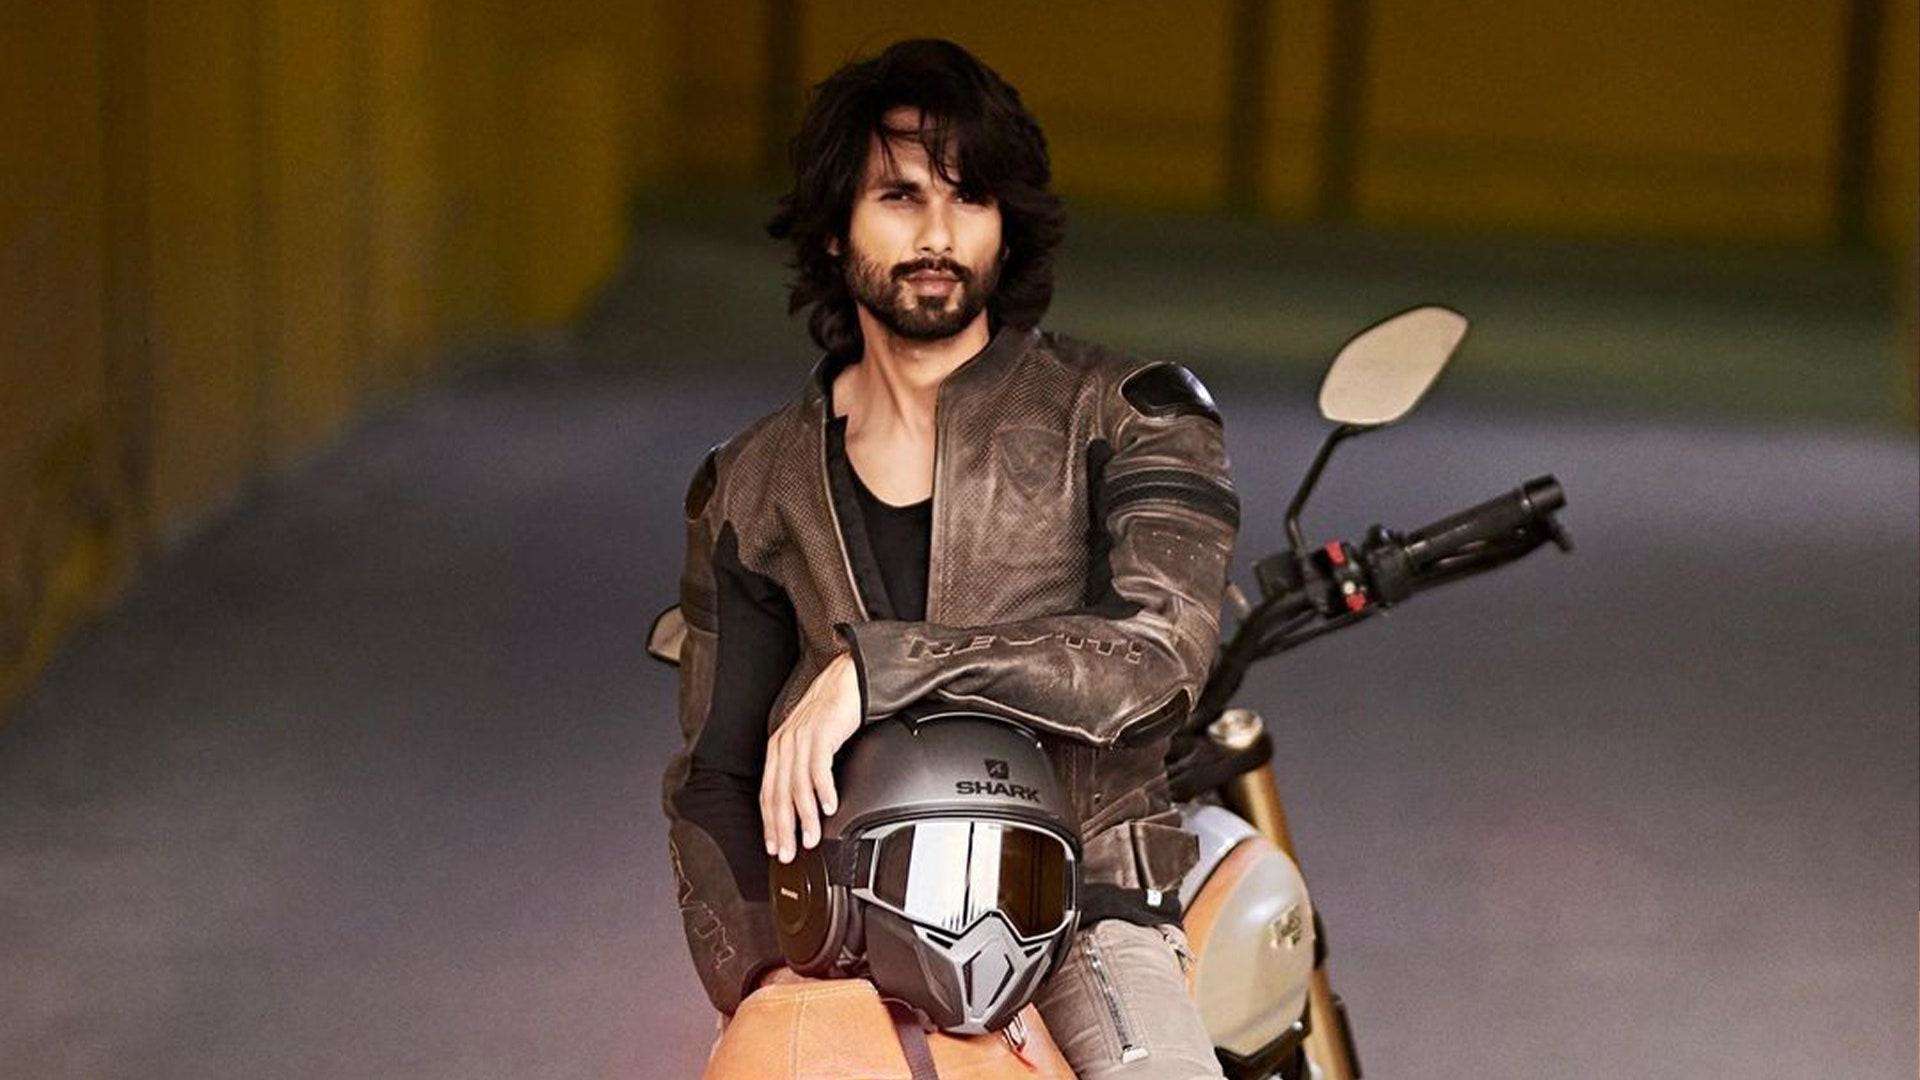 Shahid Kapoor: कबीर सिंह के मेकर्स के साथ अगली फिल्म करेंगे शाहिद कपूर, स्क्रीन पर निभाएंगे छत्रपति शिवाजी महाराज का किरदार